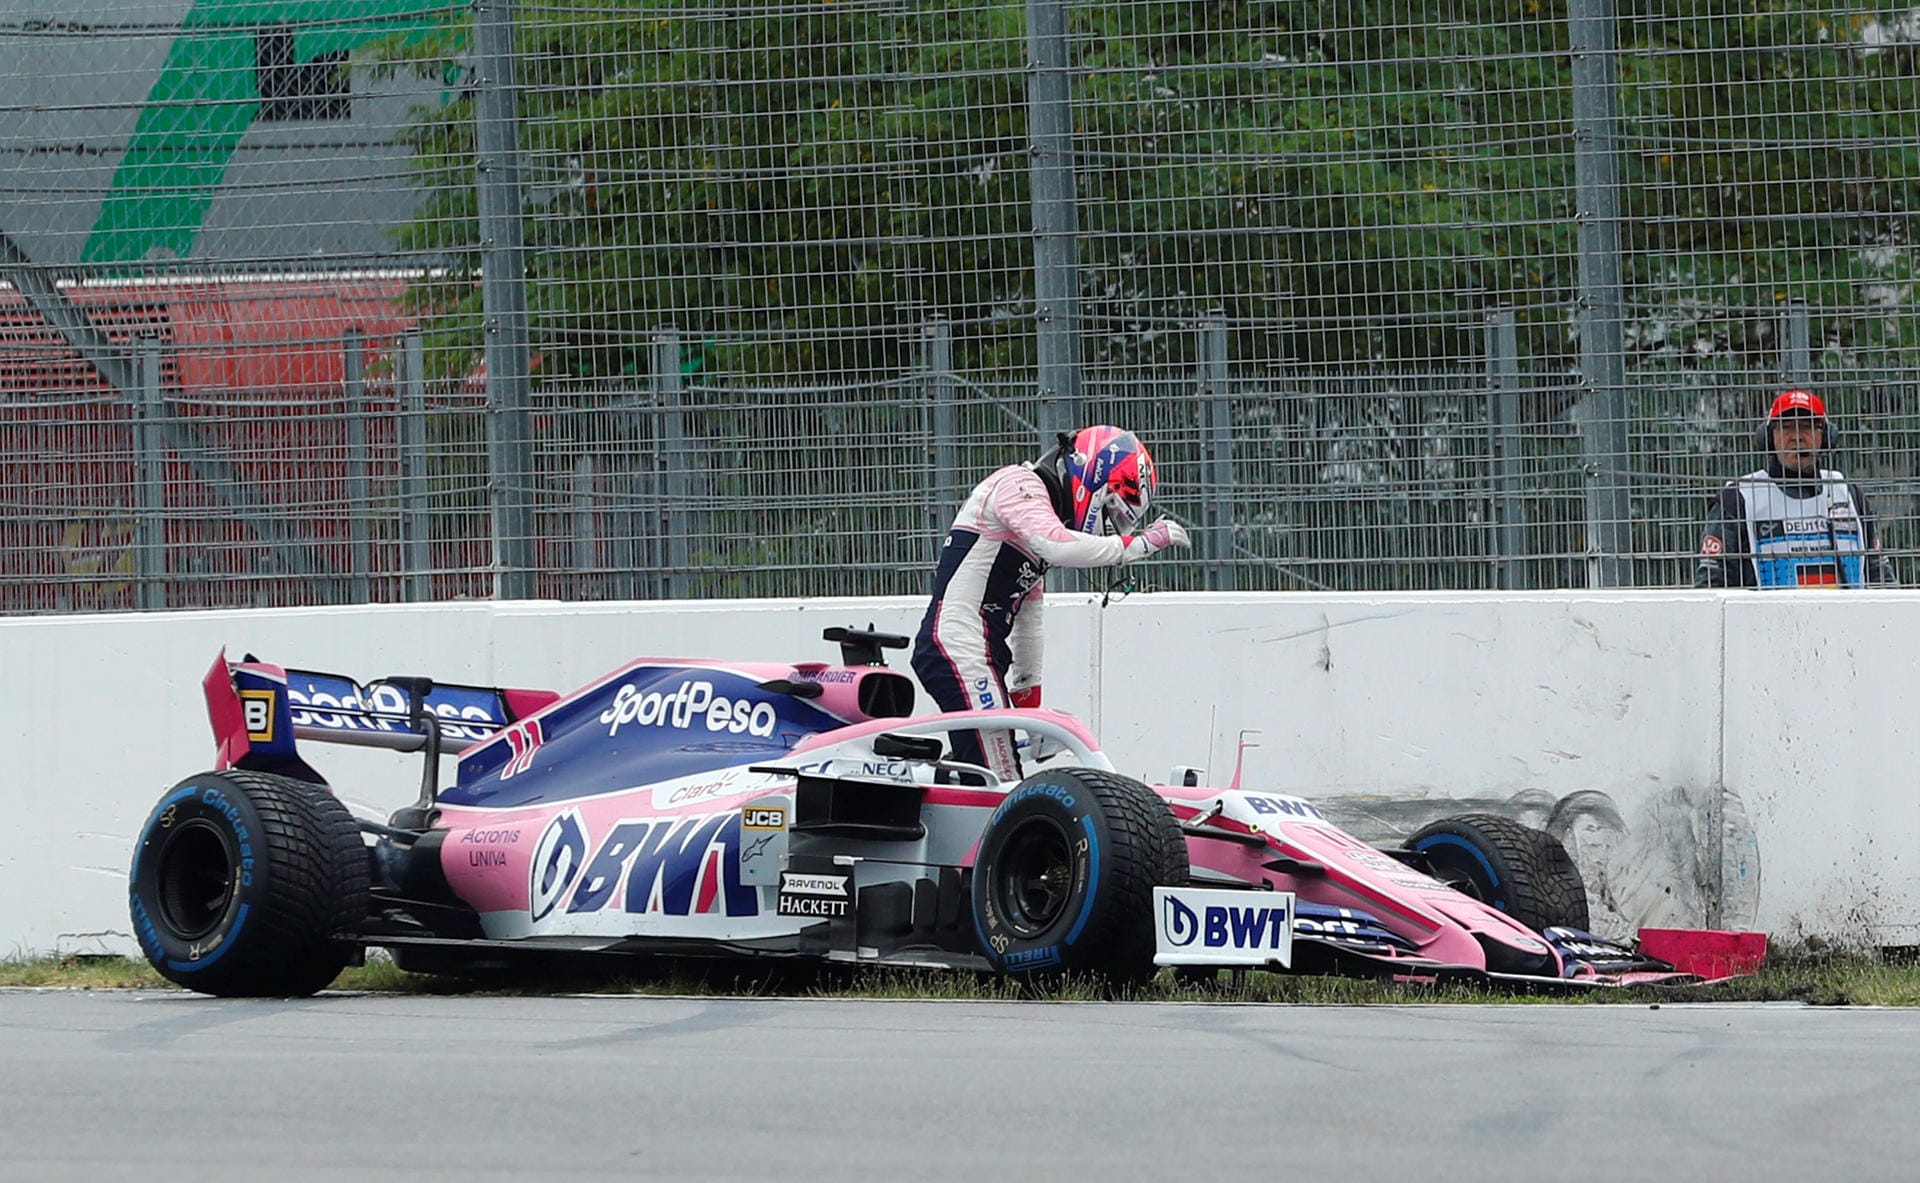 Auch Sergio Perez im Racing Point beendet das Rennen nicht. Sein Bolide landet in der Bande.